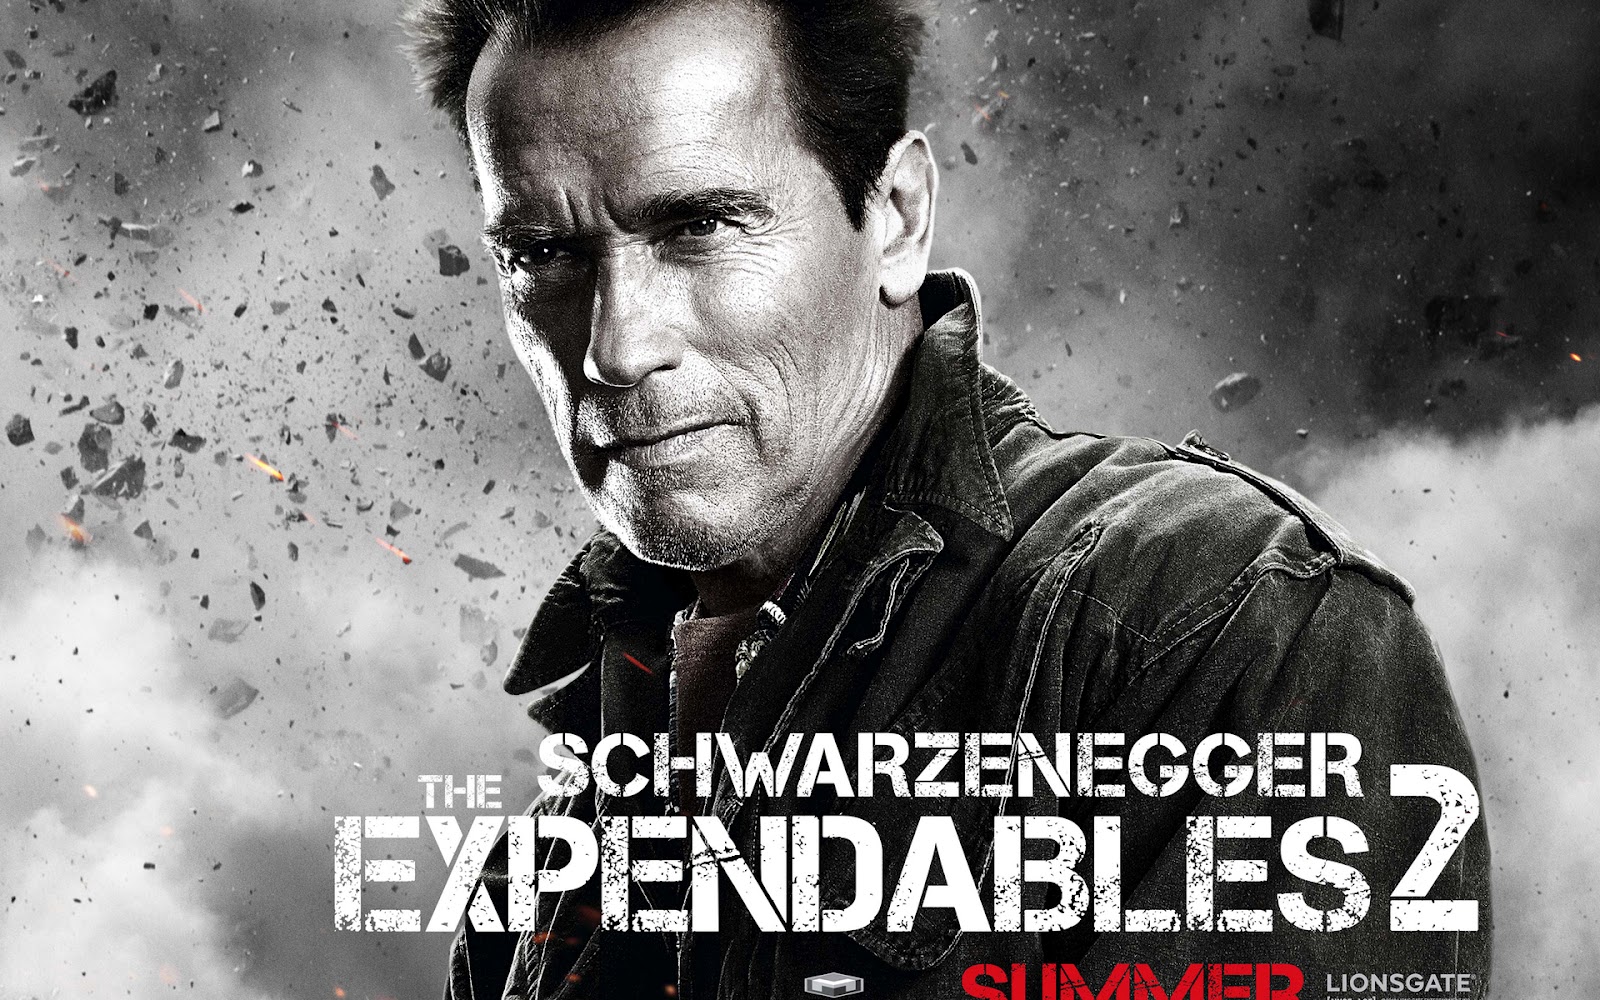 http://1.bp.blogspot.com/-KogwU8Bsirg/T7bNNZ9-YnI/AAAAAAAAdO4/6s9w2oAnmIY/s1600/The-Expendables-2_Arnold-Schwarzenegger.jpg